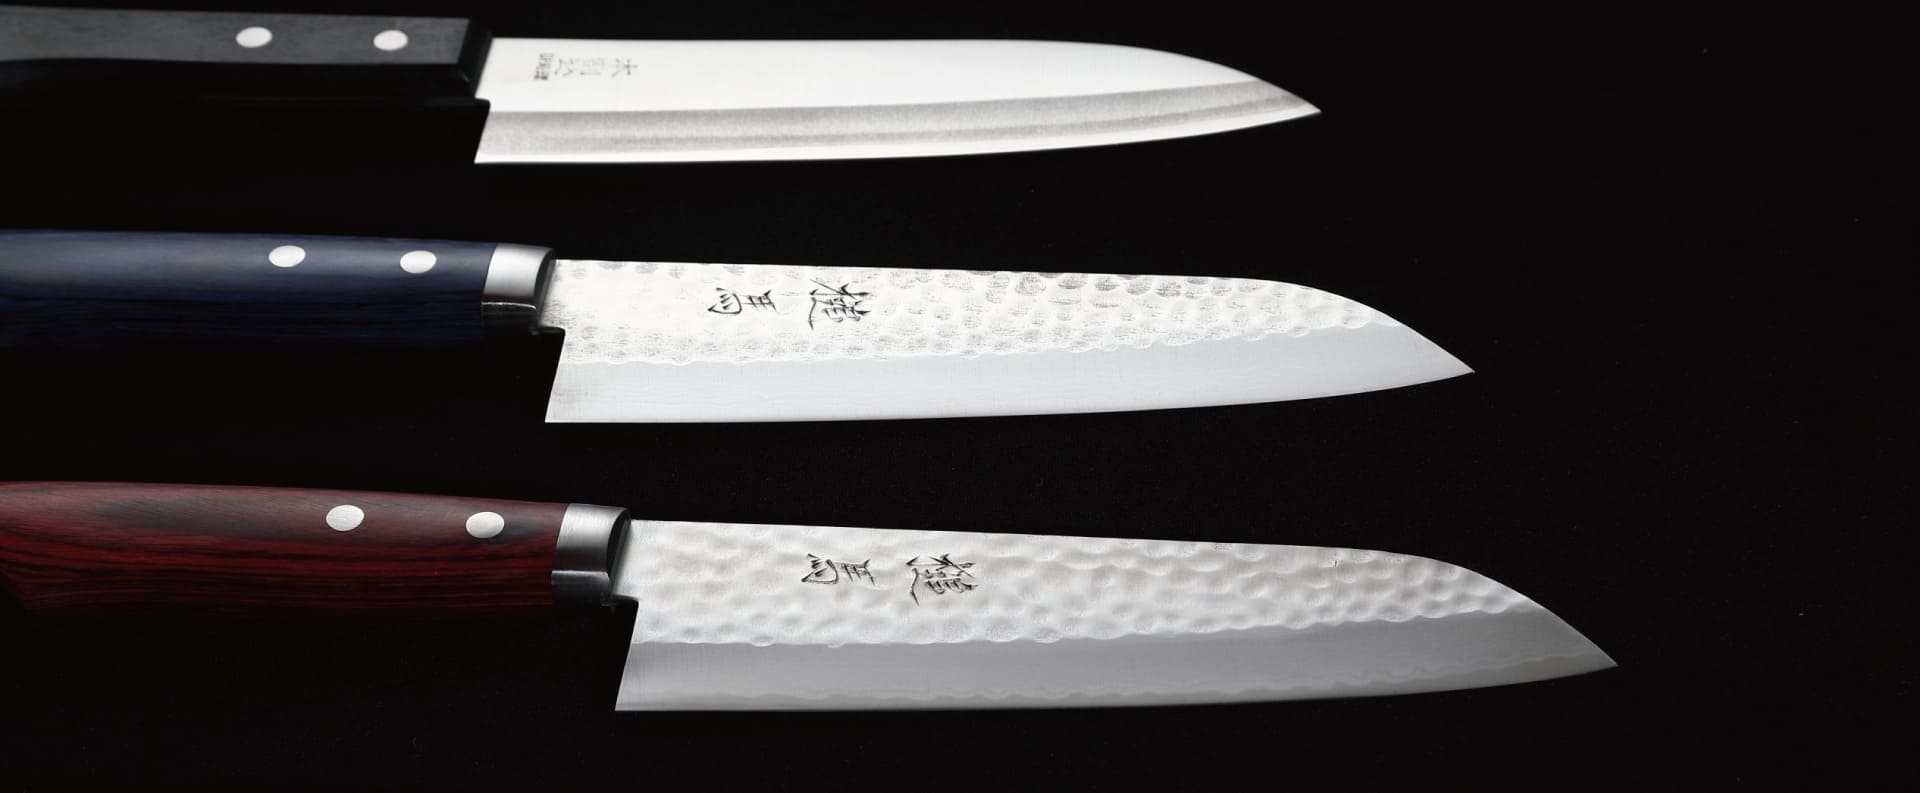 Photo of many kitchen knives